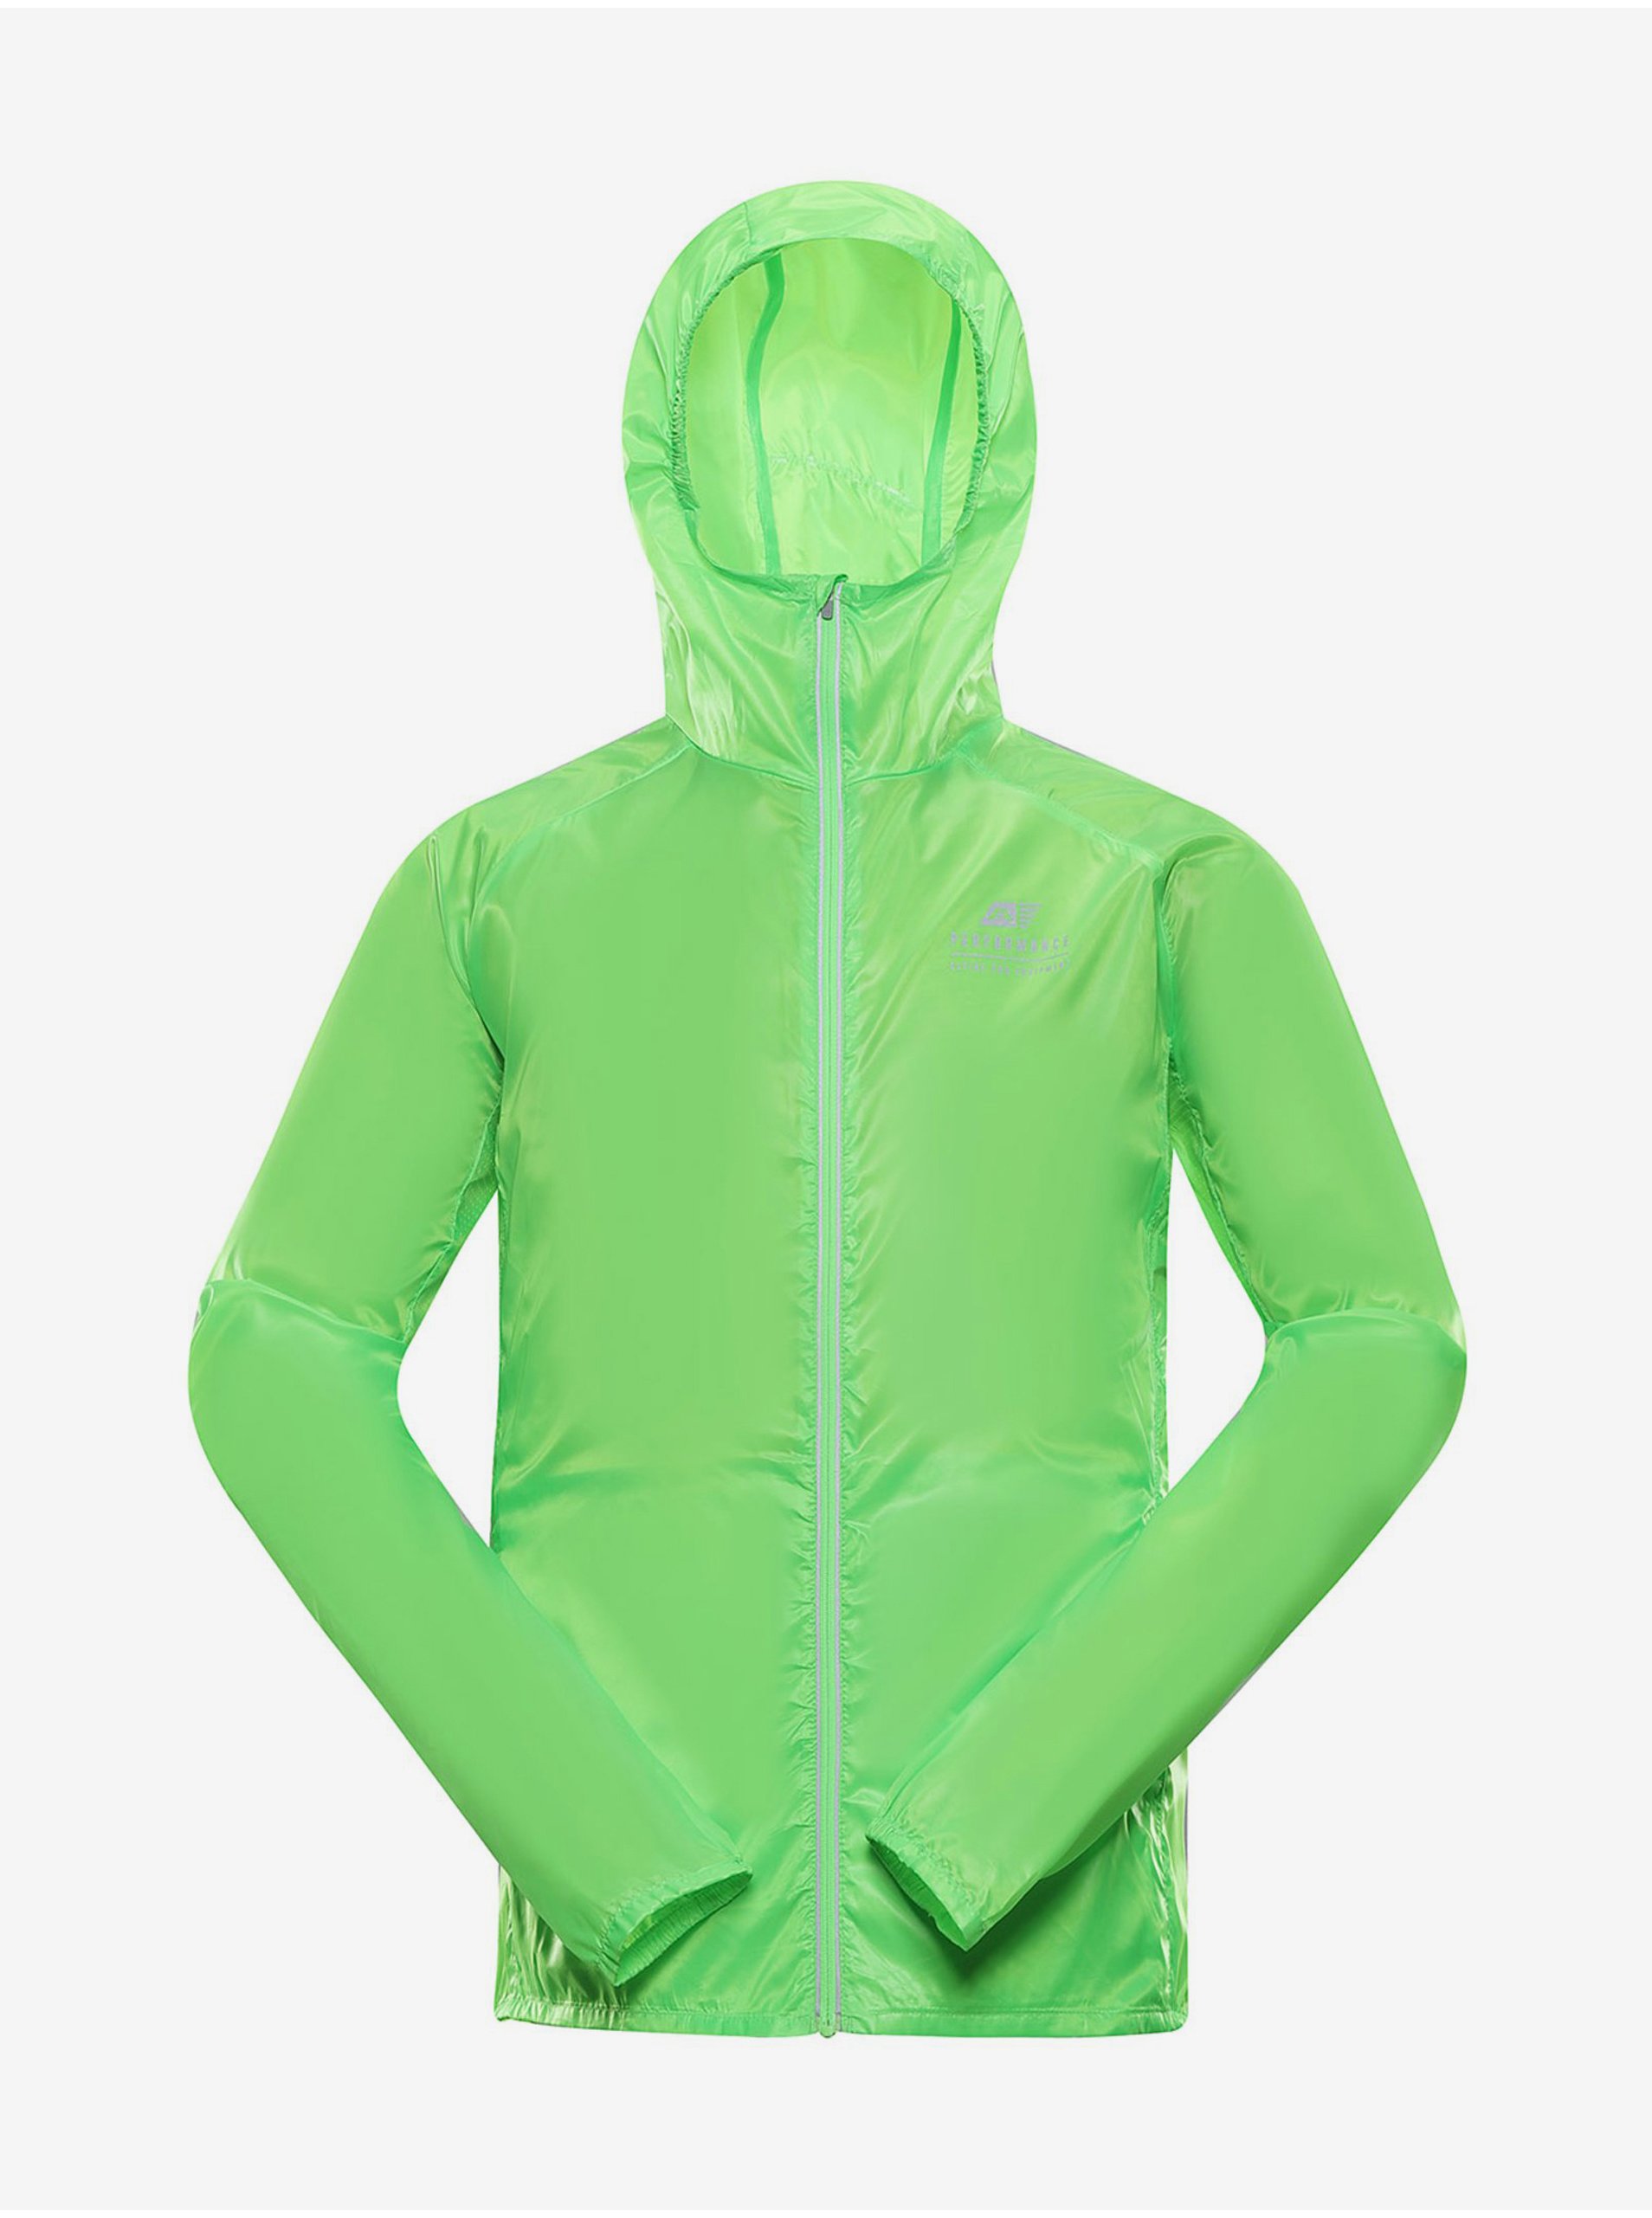 Levně Pánská ultralehká bunda s impregnací ALPINE PRO BIK zelená